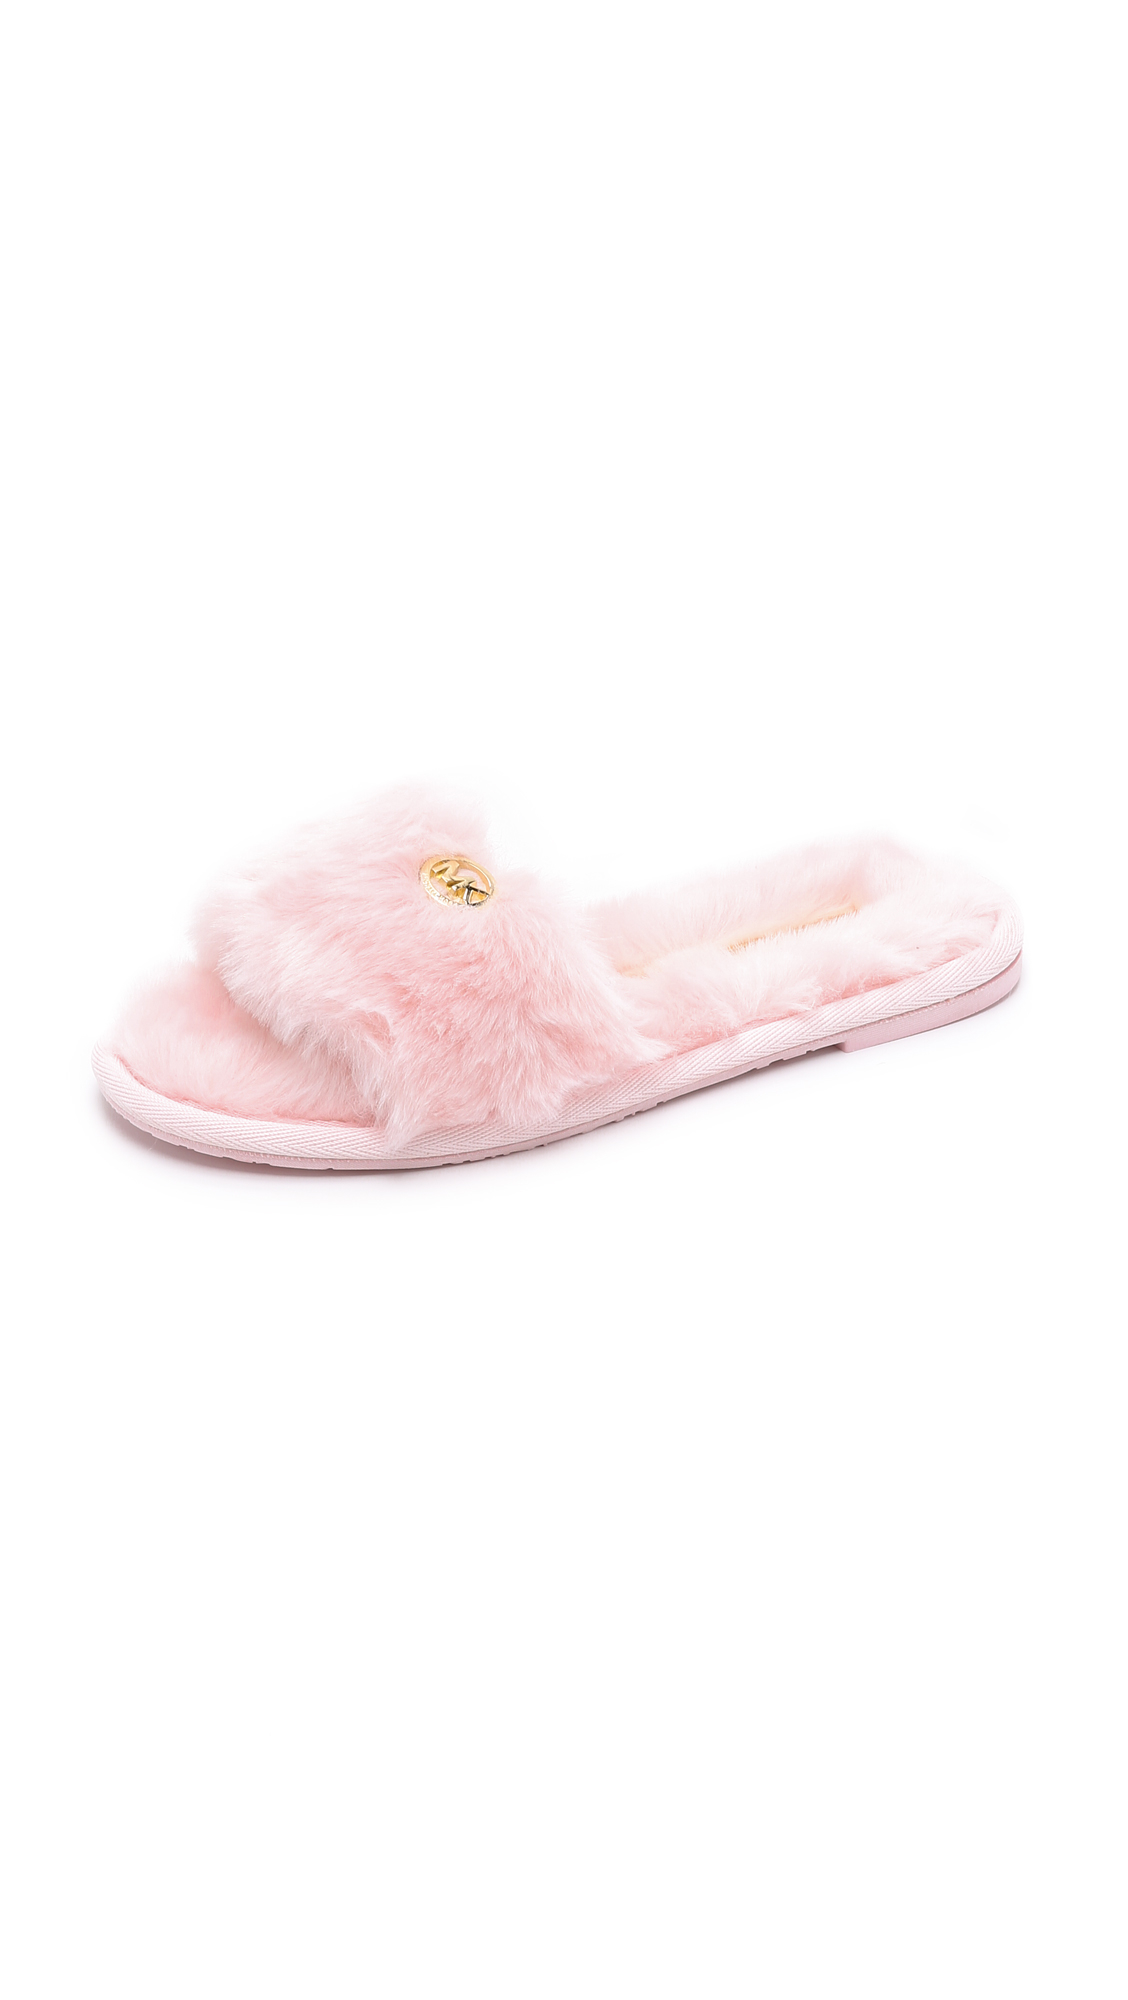 mk fluffy slippers